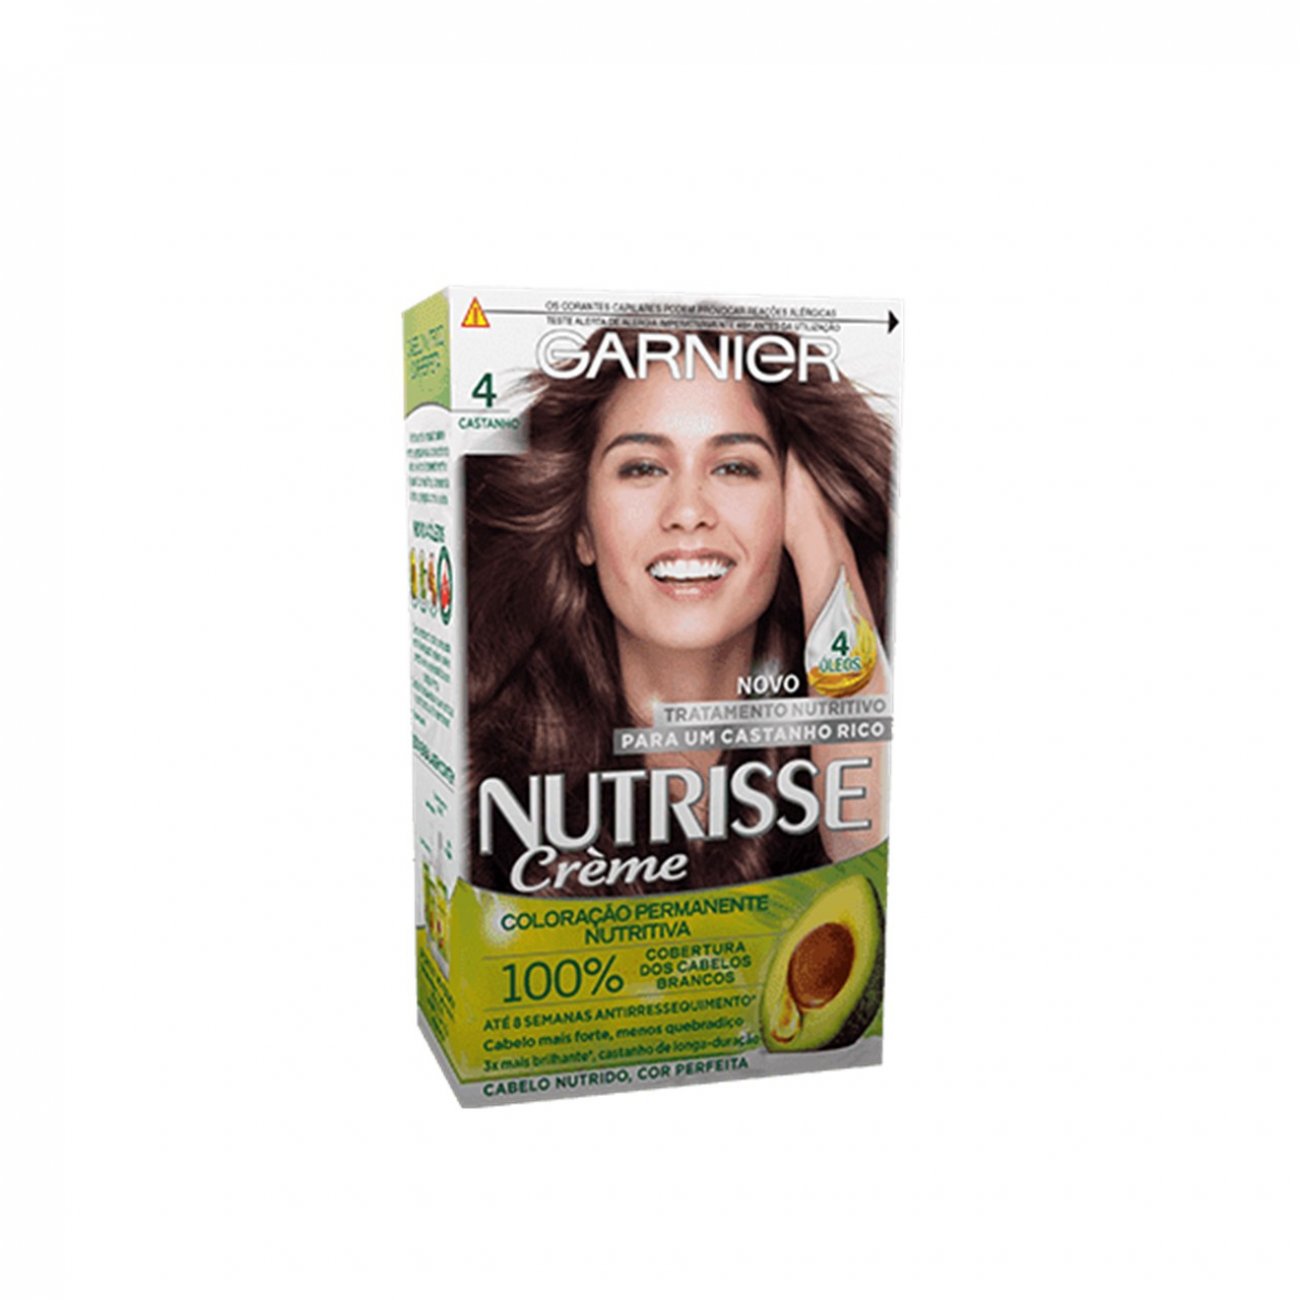 Buy Garnier Nutrisse Crème 4 Dark Brown Permanent Hair Dye · Belgium